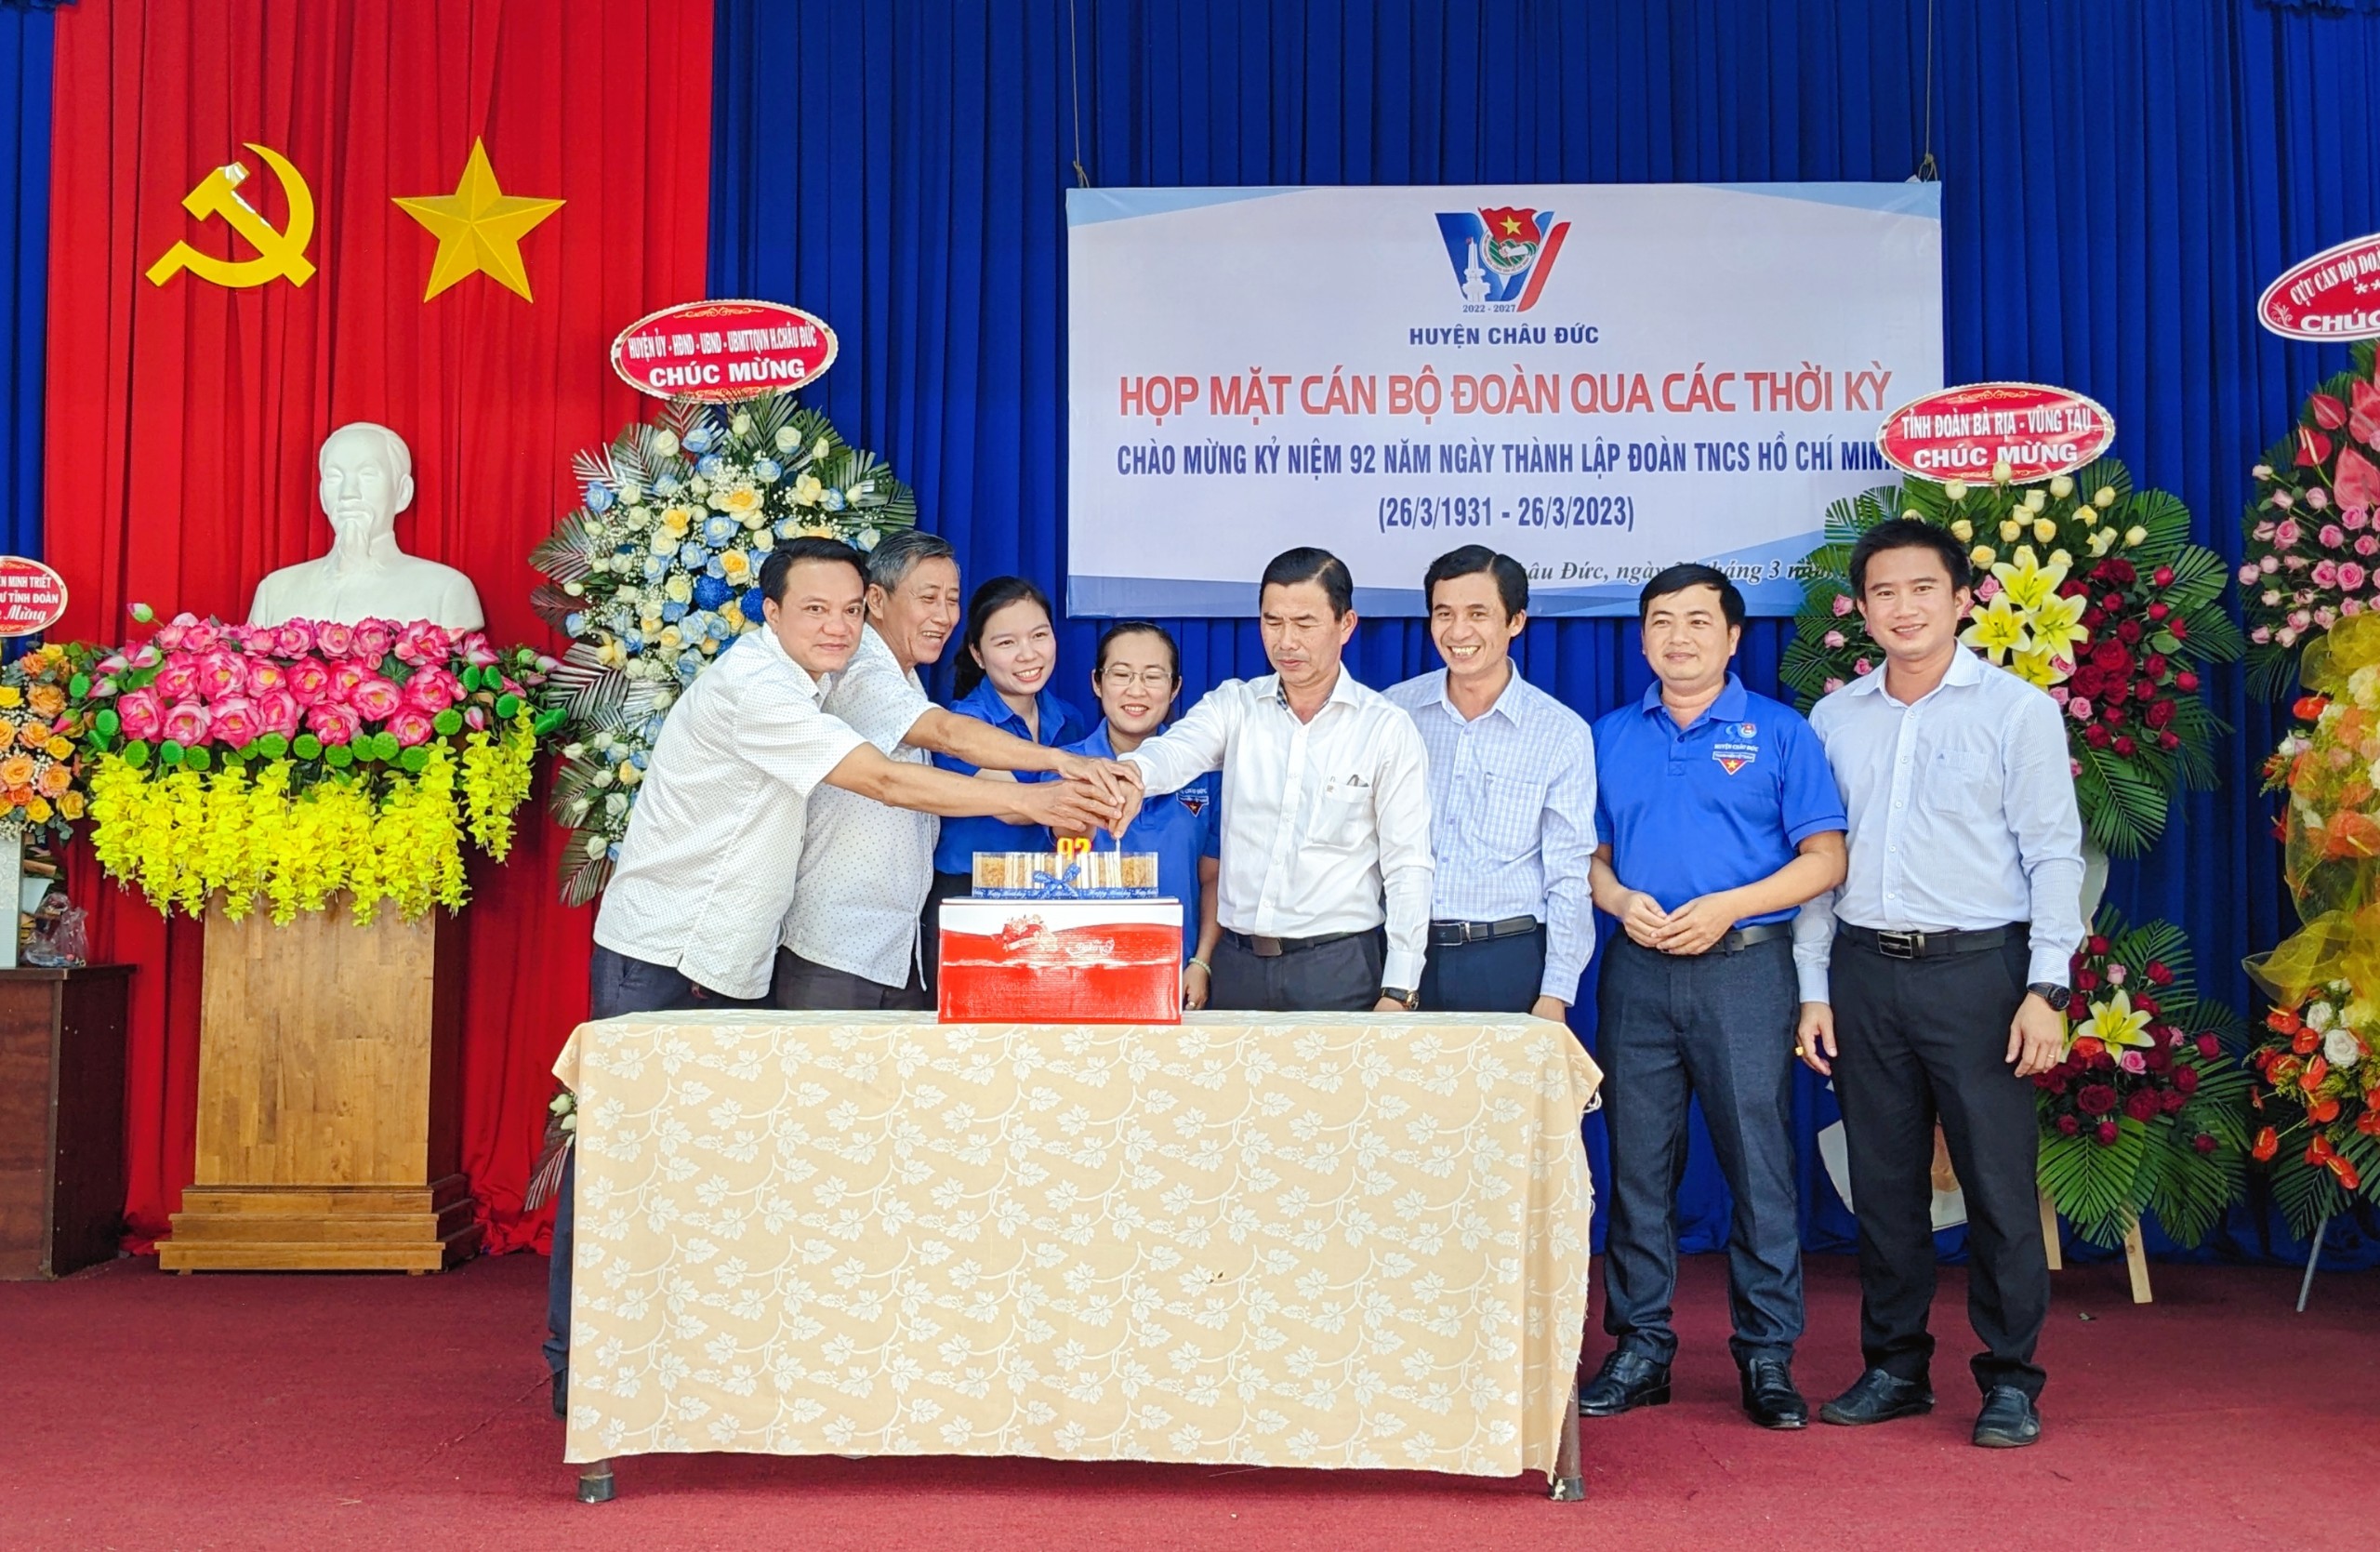 Cán bộ, nguyên cán bộ Huyện Đoàn Châu Đức cùng nhau cắt bánh kem kỷ niệm 92 năm Ngày thành lập Đoàn TNCS Hồ Chí Minh.